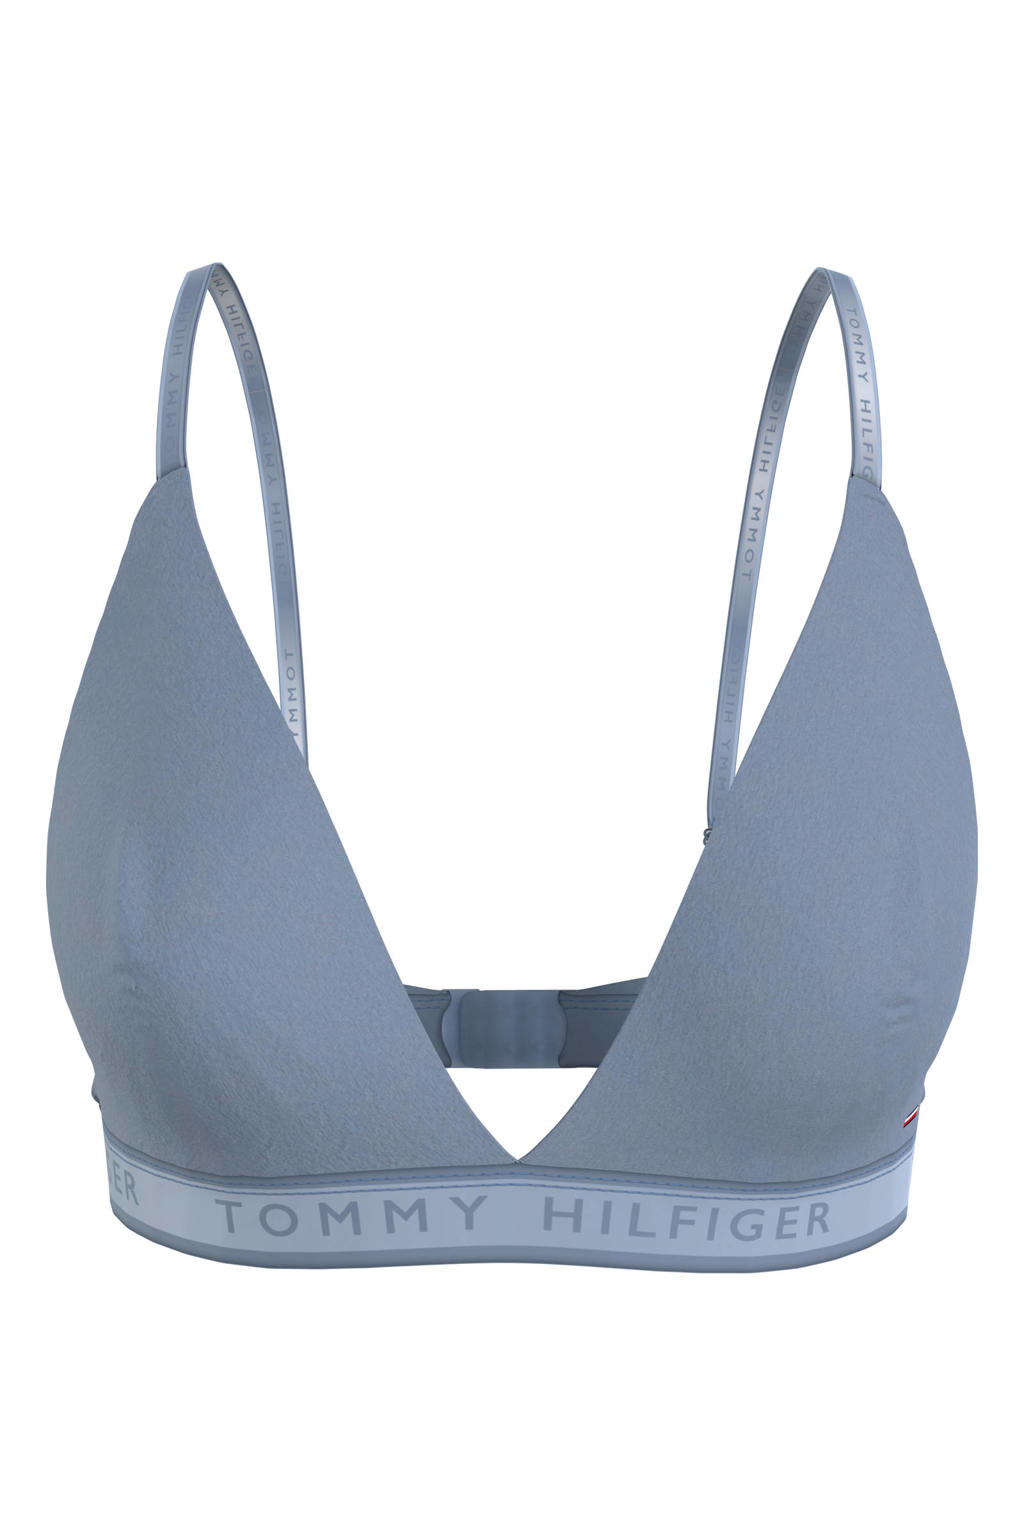 Tommy Hilfiger niet-voorgevormde bh zonder beugel blauw